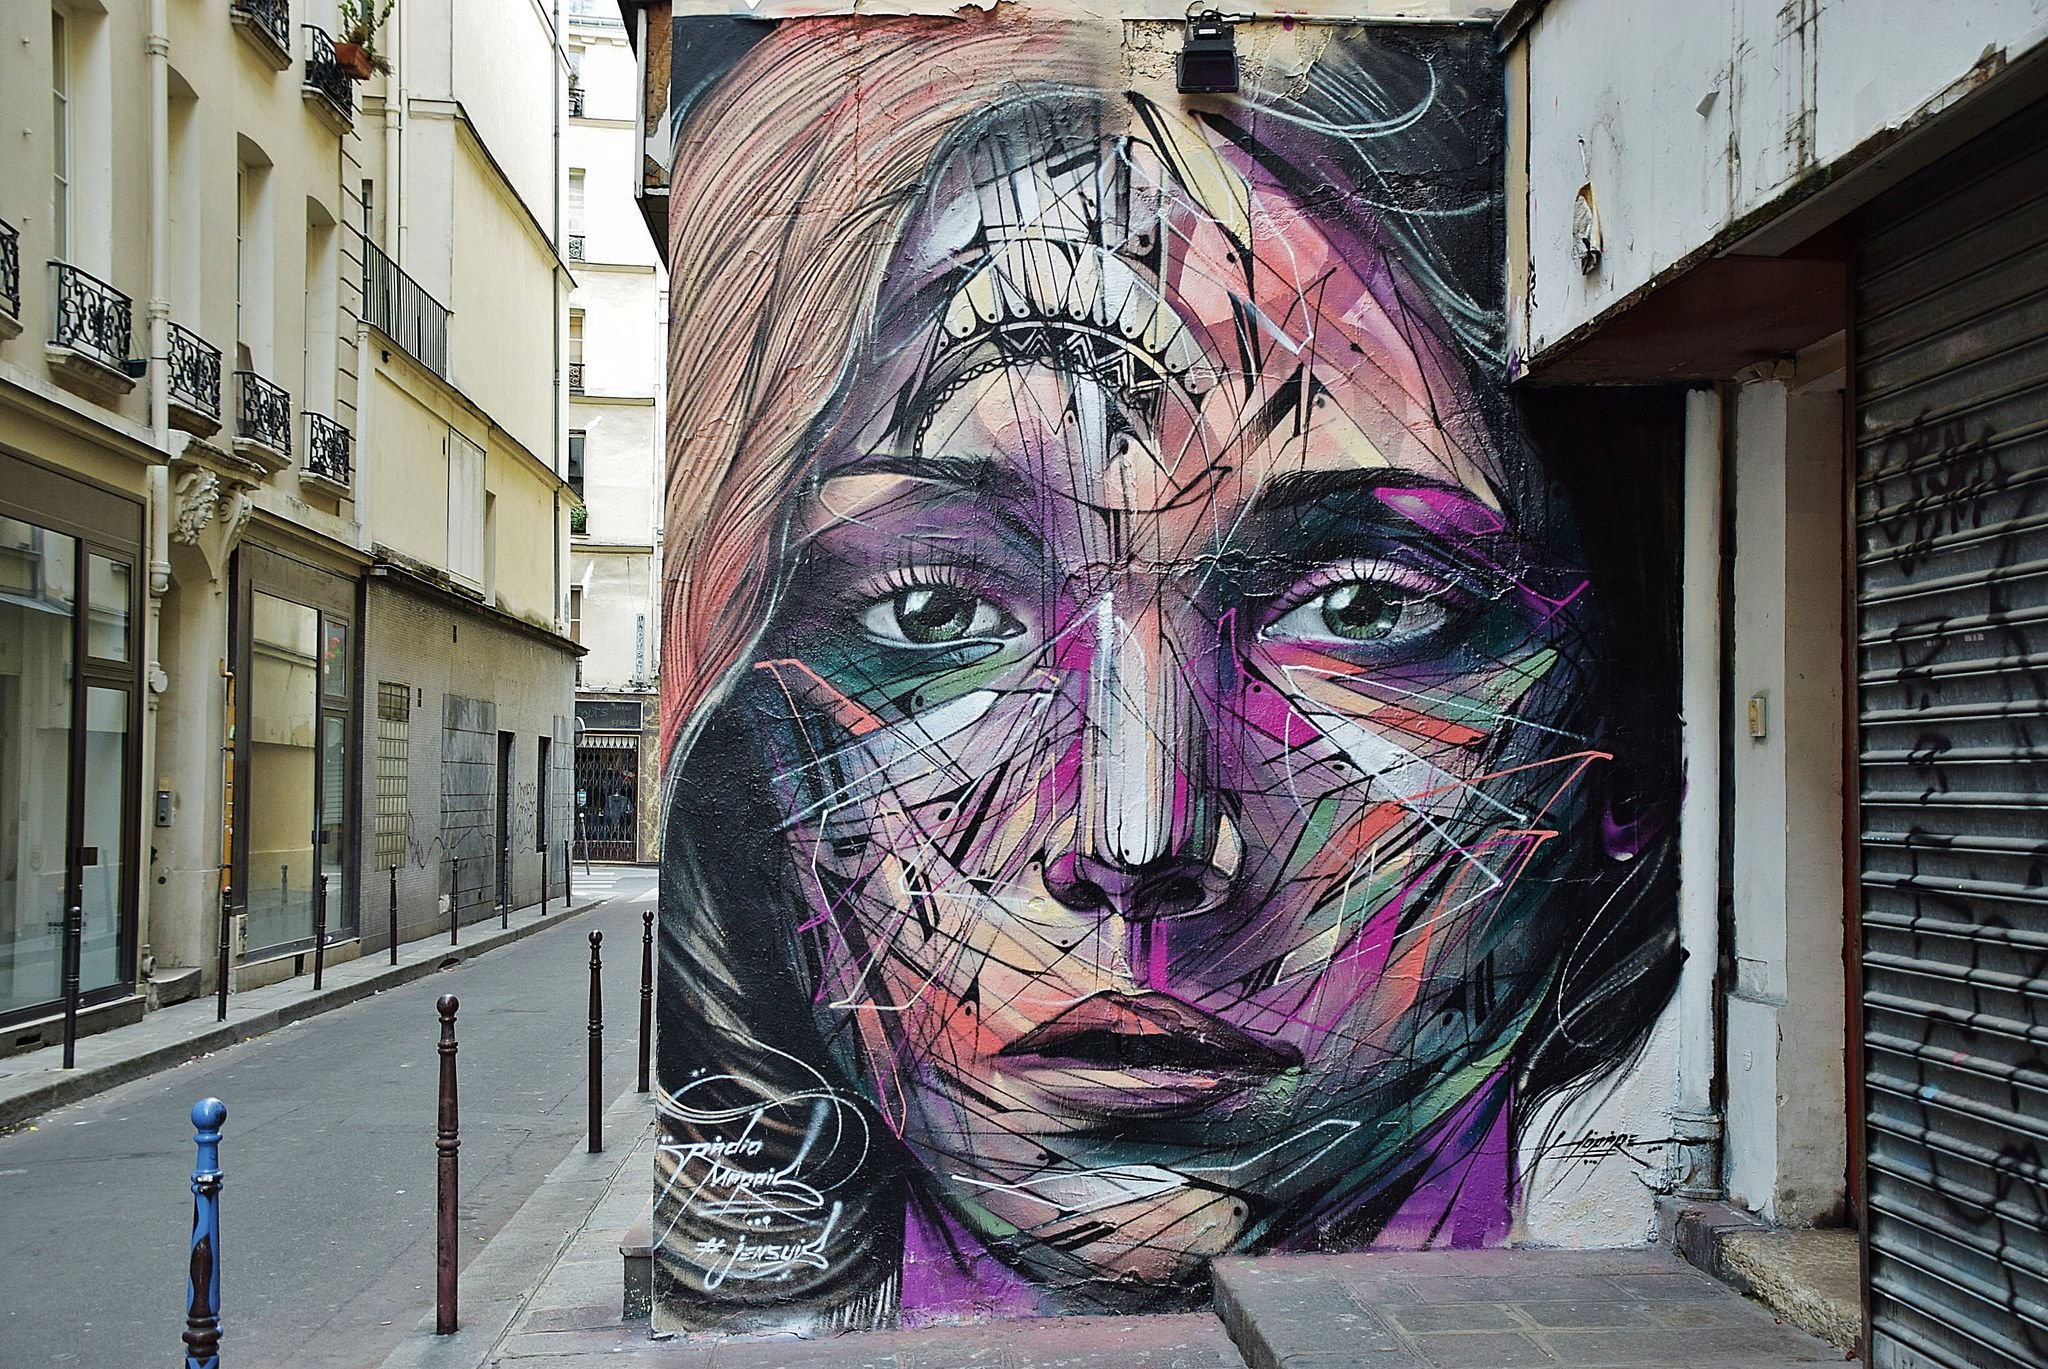 Street art artists